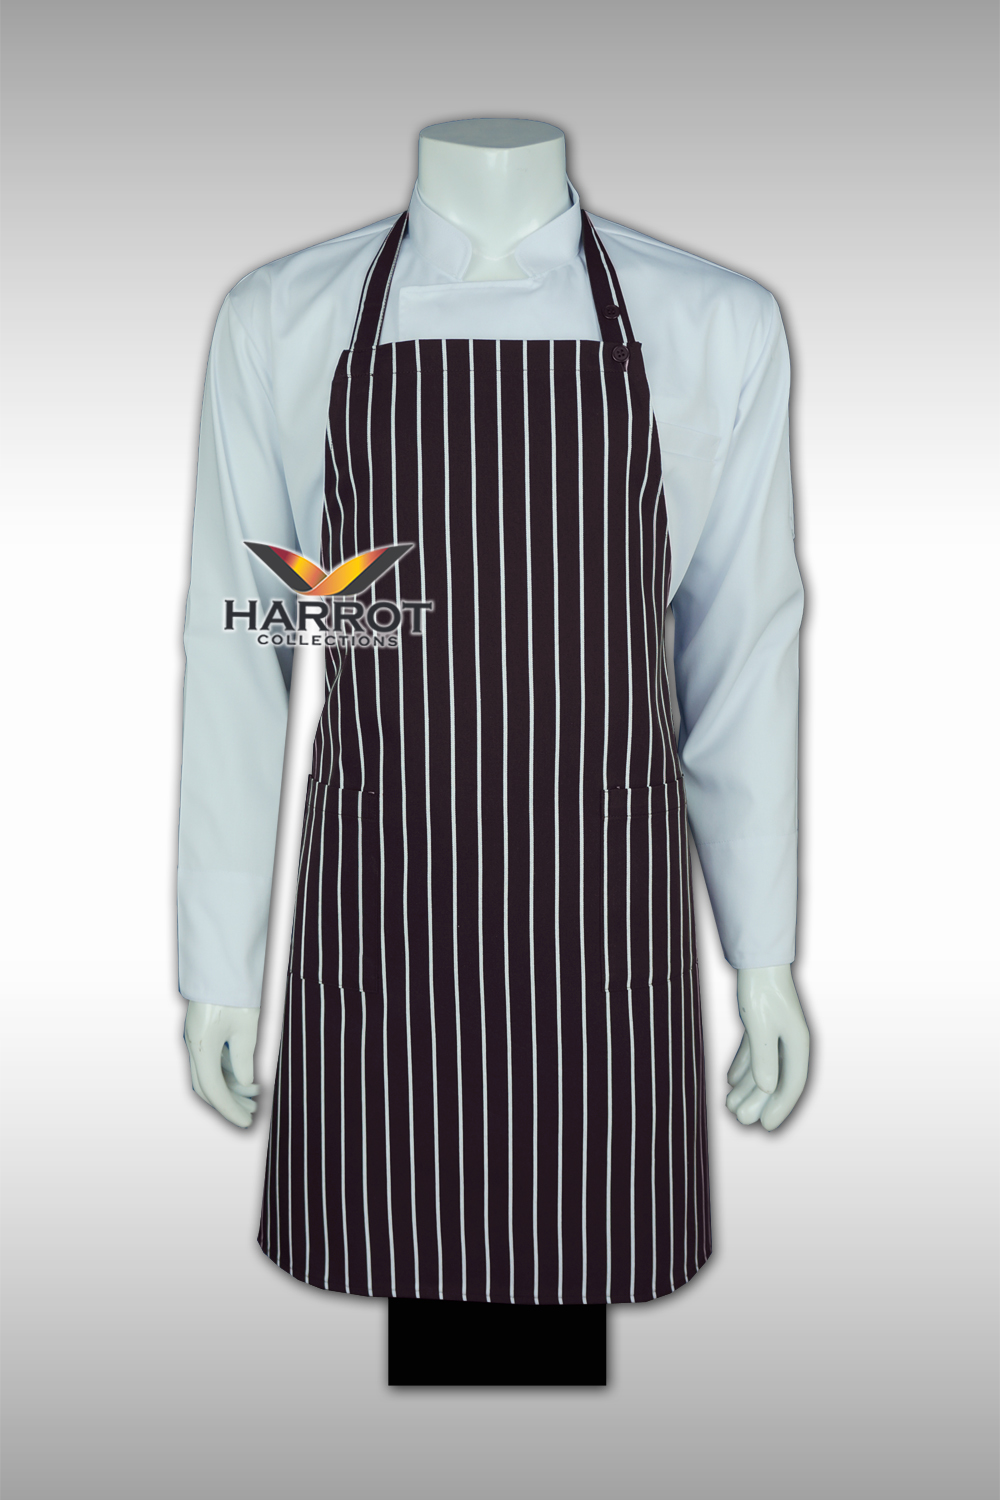 ผ้ากันเปื้อน ผ้ากันเปื้อนเชฟ ผ้ากันเปื้อนพ่อครัว ผ้ากันเปื้อนกุ๊ก ผ้ากันเปื้อนเสิร์ฟ เต็มตัว ลายลาครัวสีน้ำตาล (FSA0705)